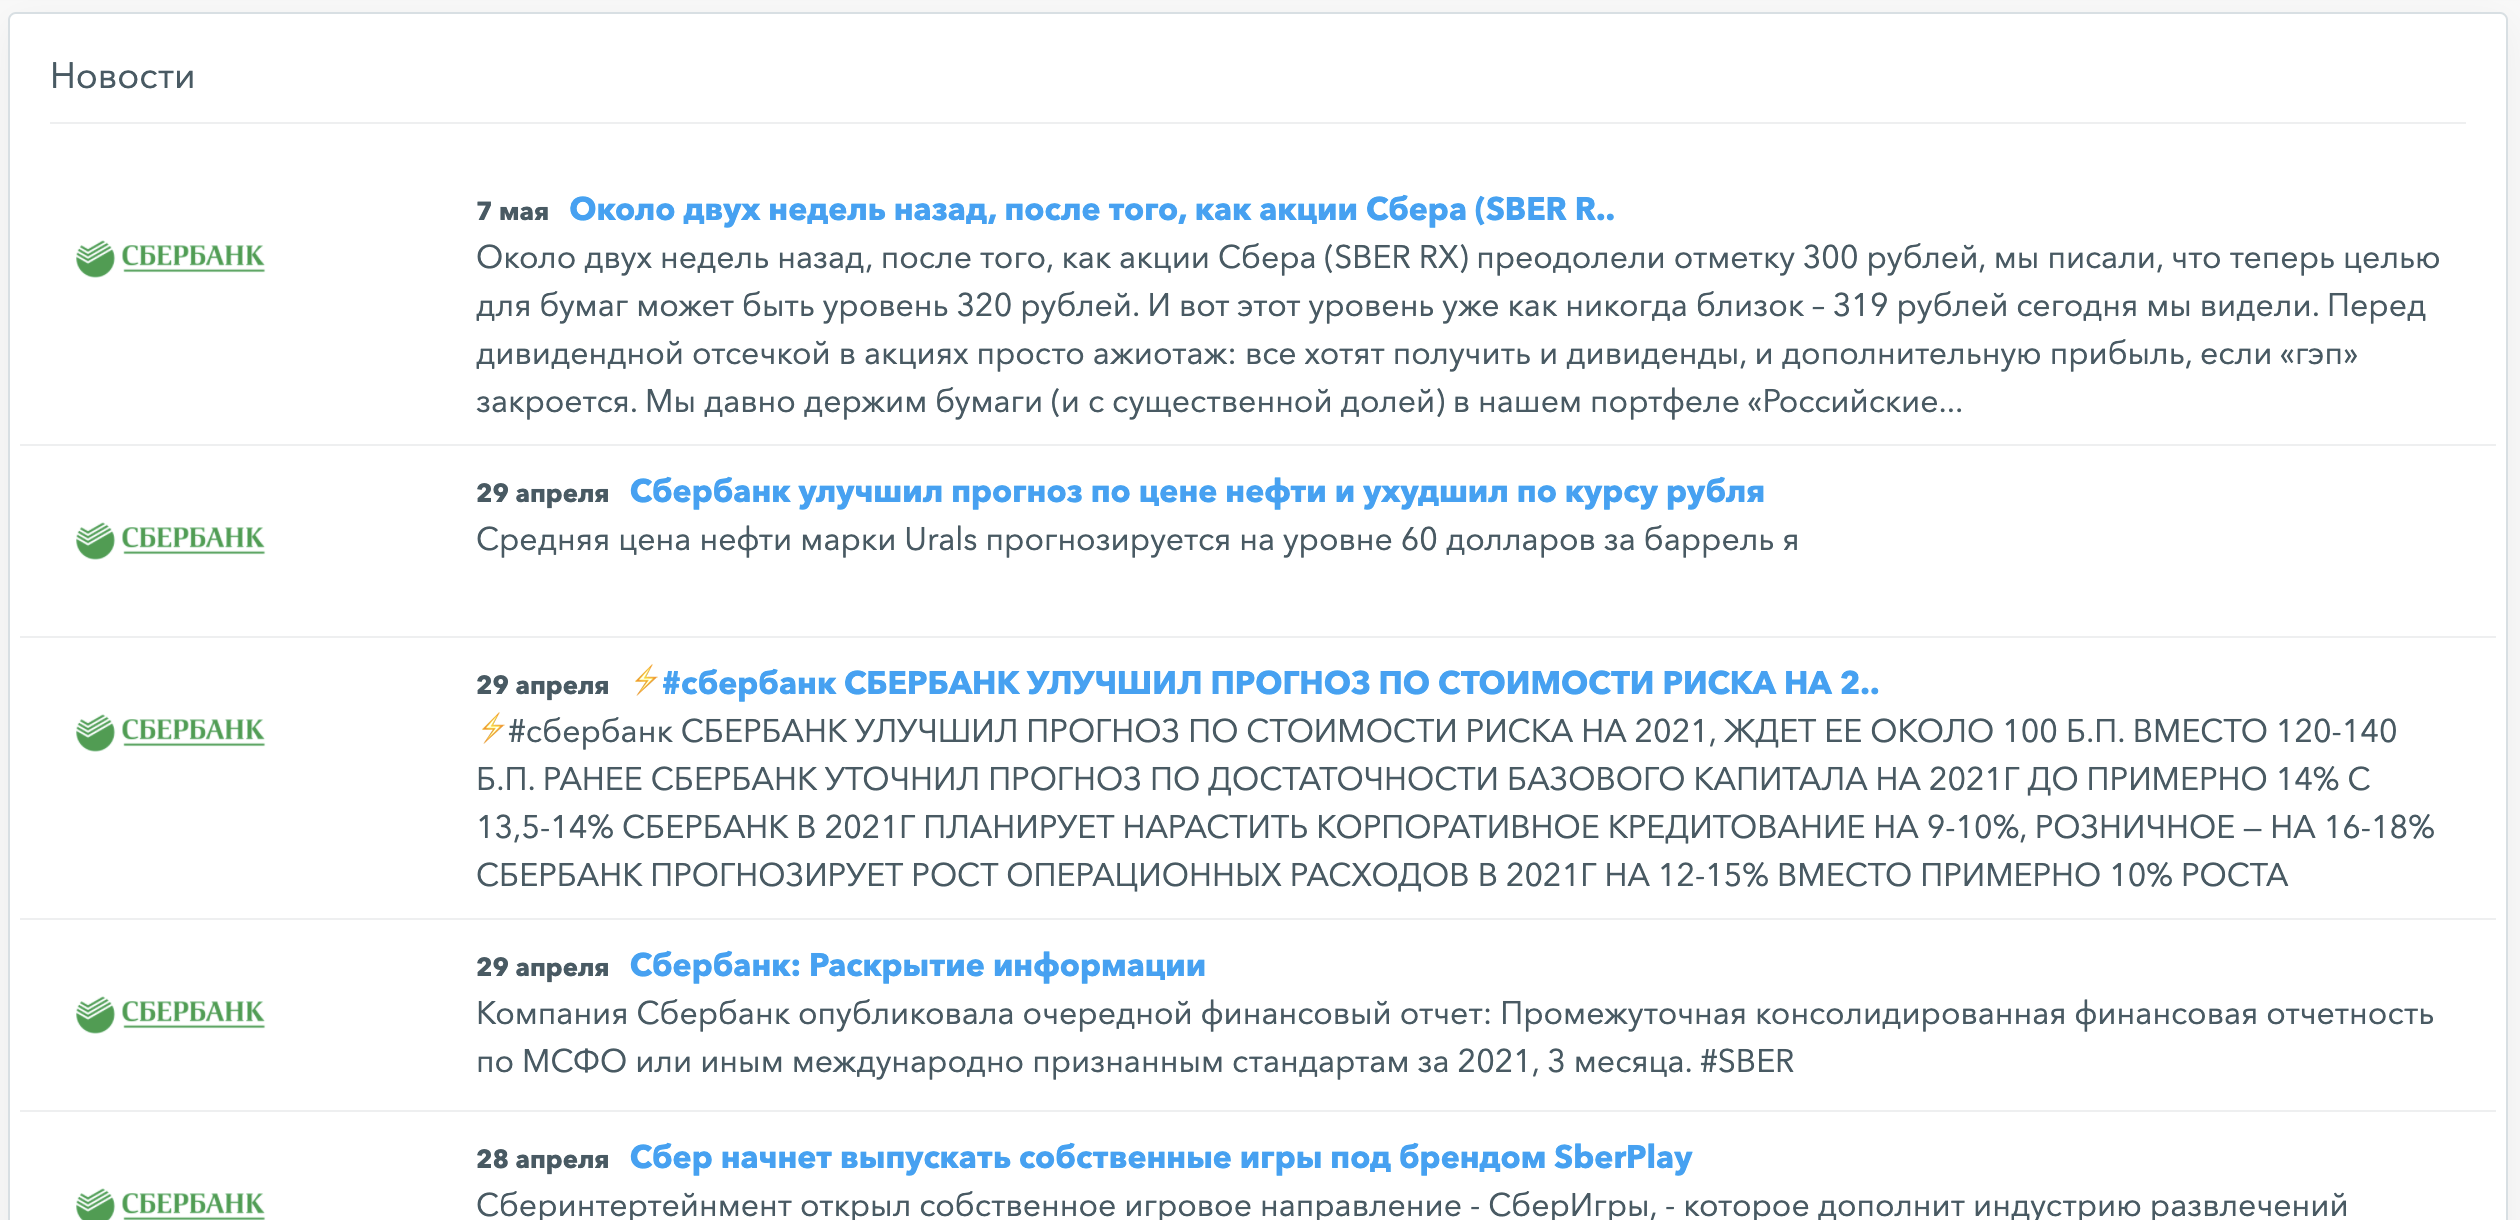 Новости по компании Сбербанк на FinanceMarker.ru